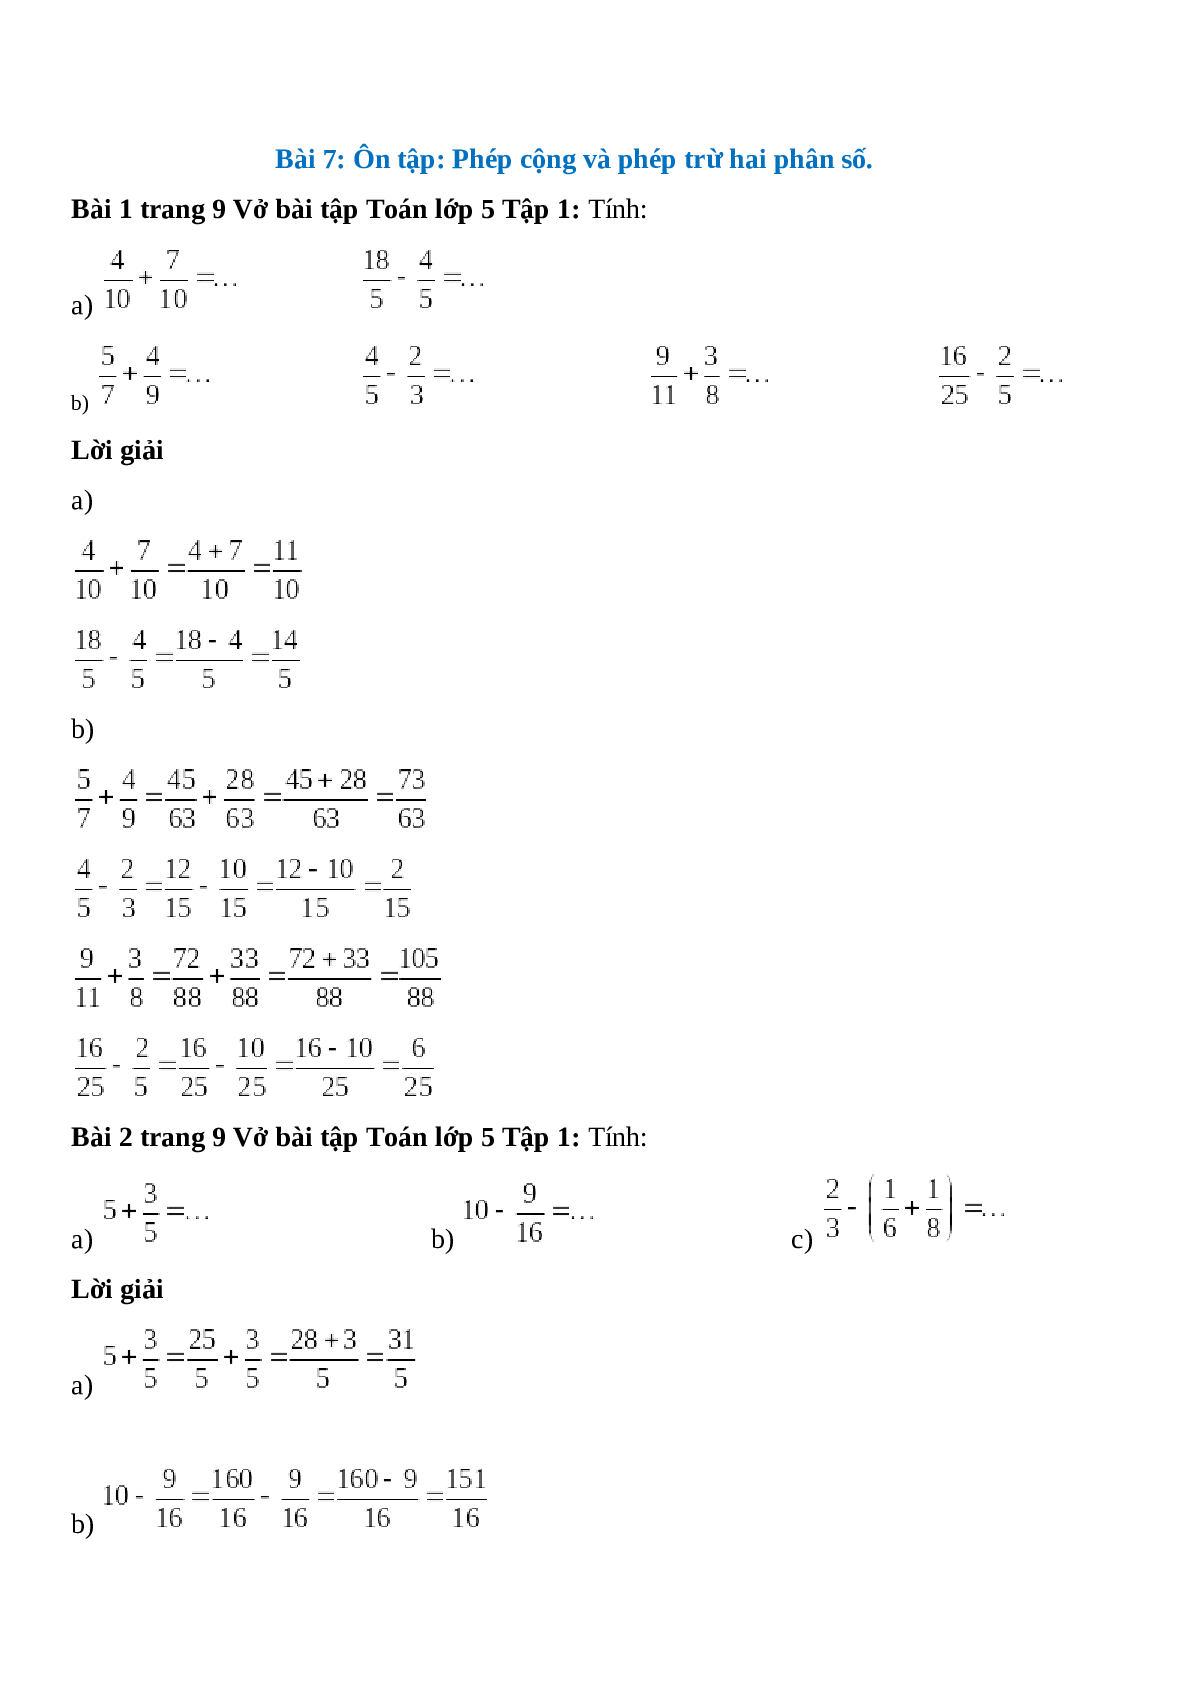 Vở bài tập Toán lớp 5 trang 9 Bài 7: Ôn tập phép cộng và phép trừ hai phân số (trang 1)